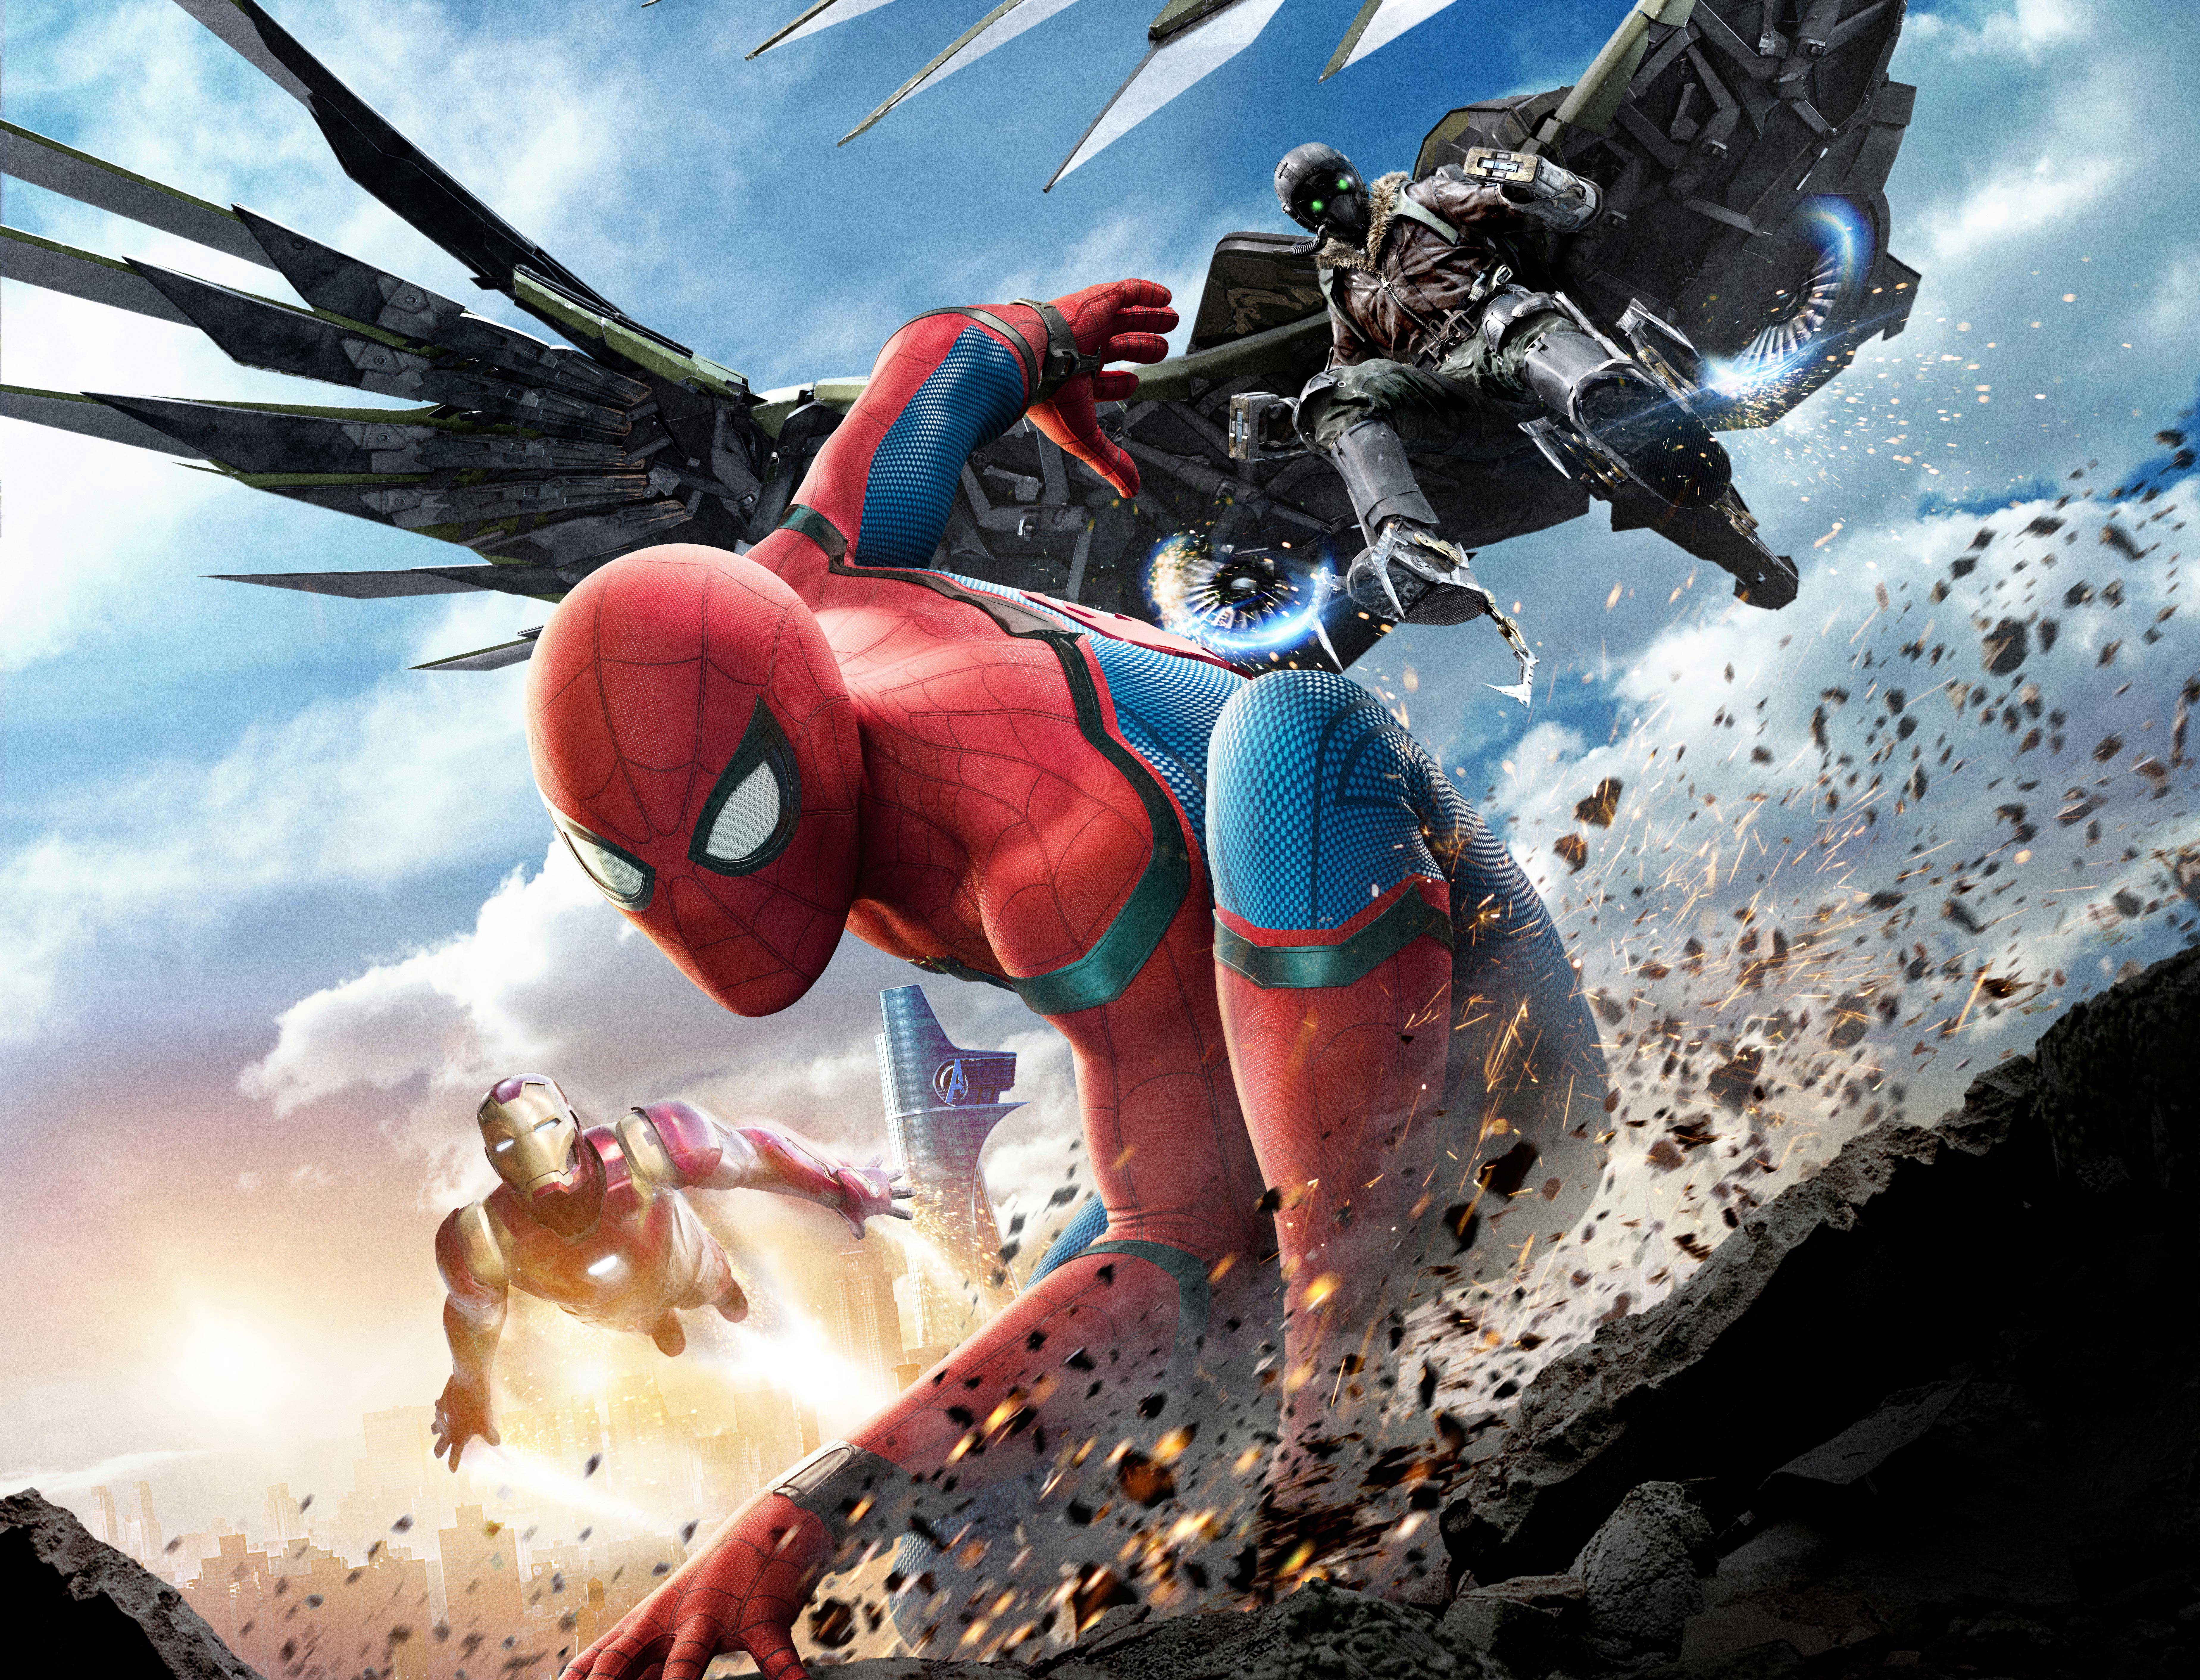 fondo de pantalla de spiderman homecoming,juego de acción y aventura,personaje de ficción,superhéroe,cg artwork,dibujos animados